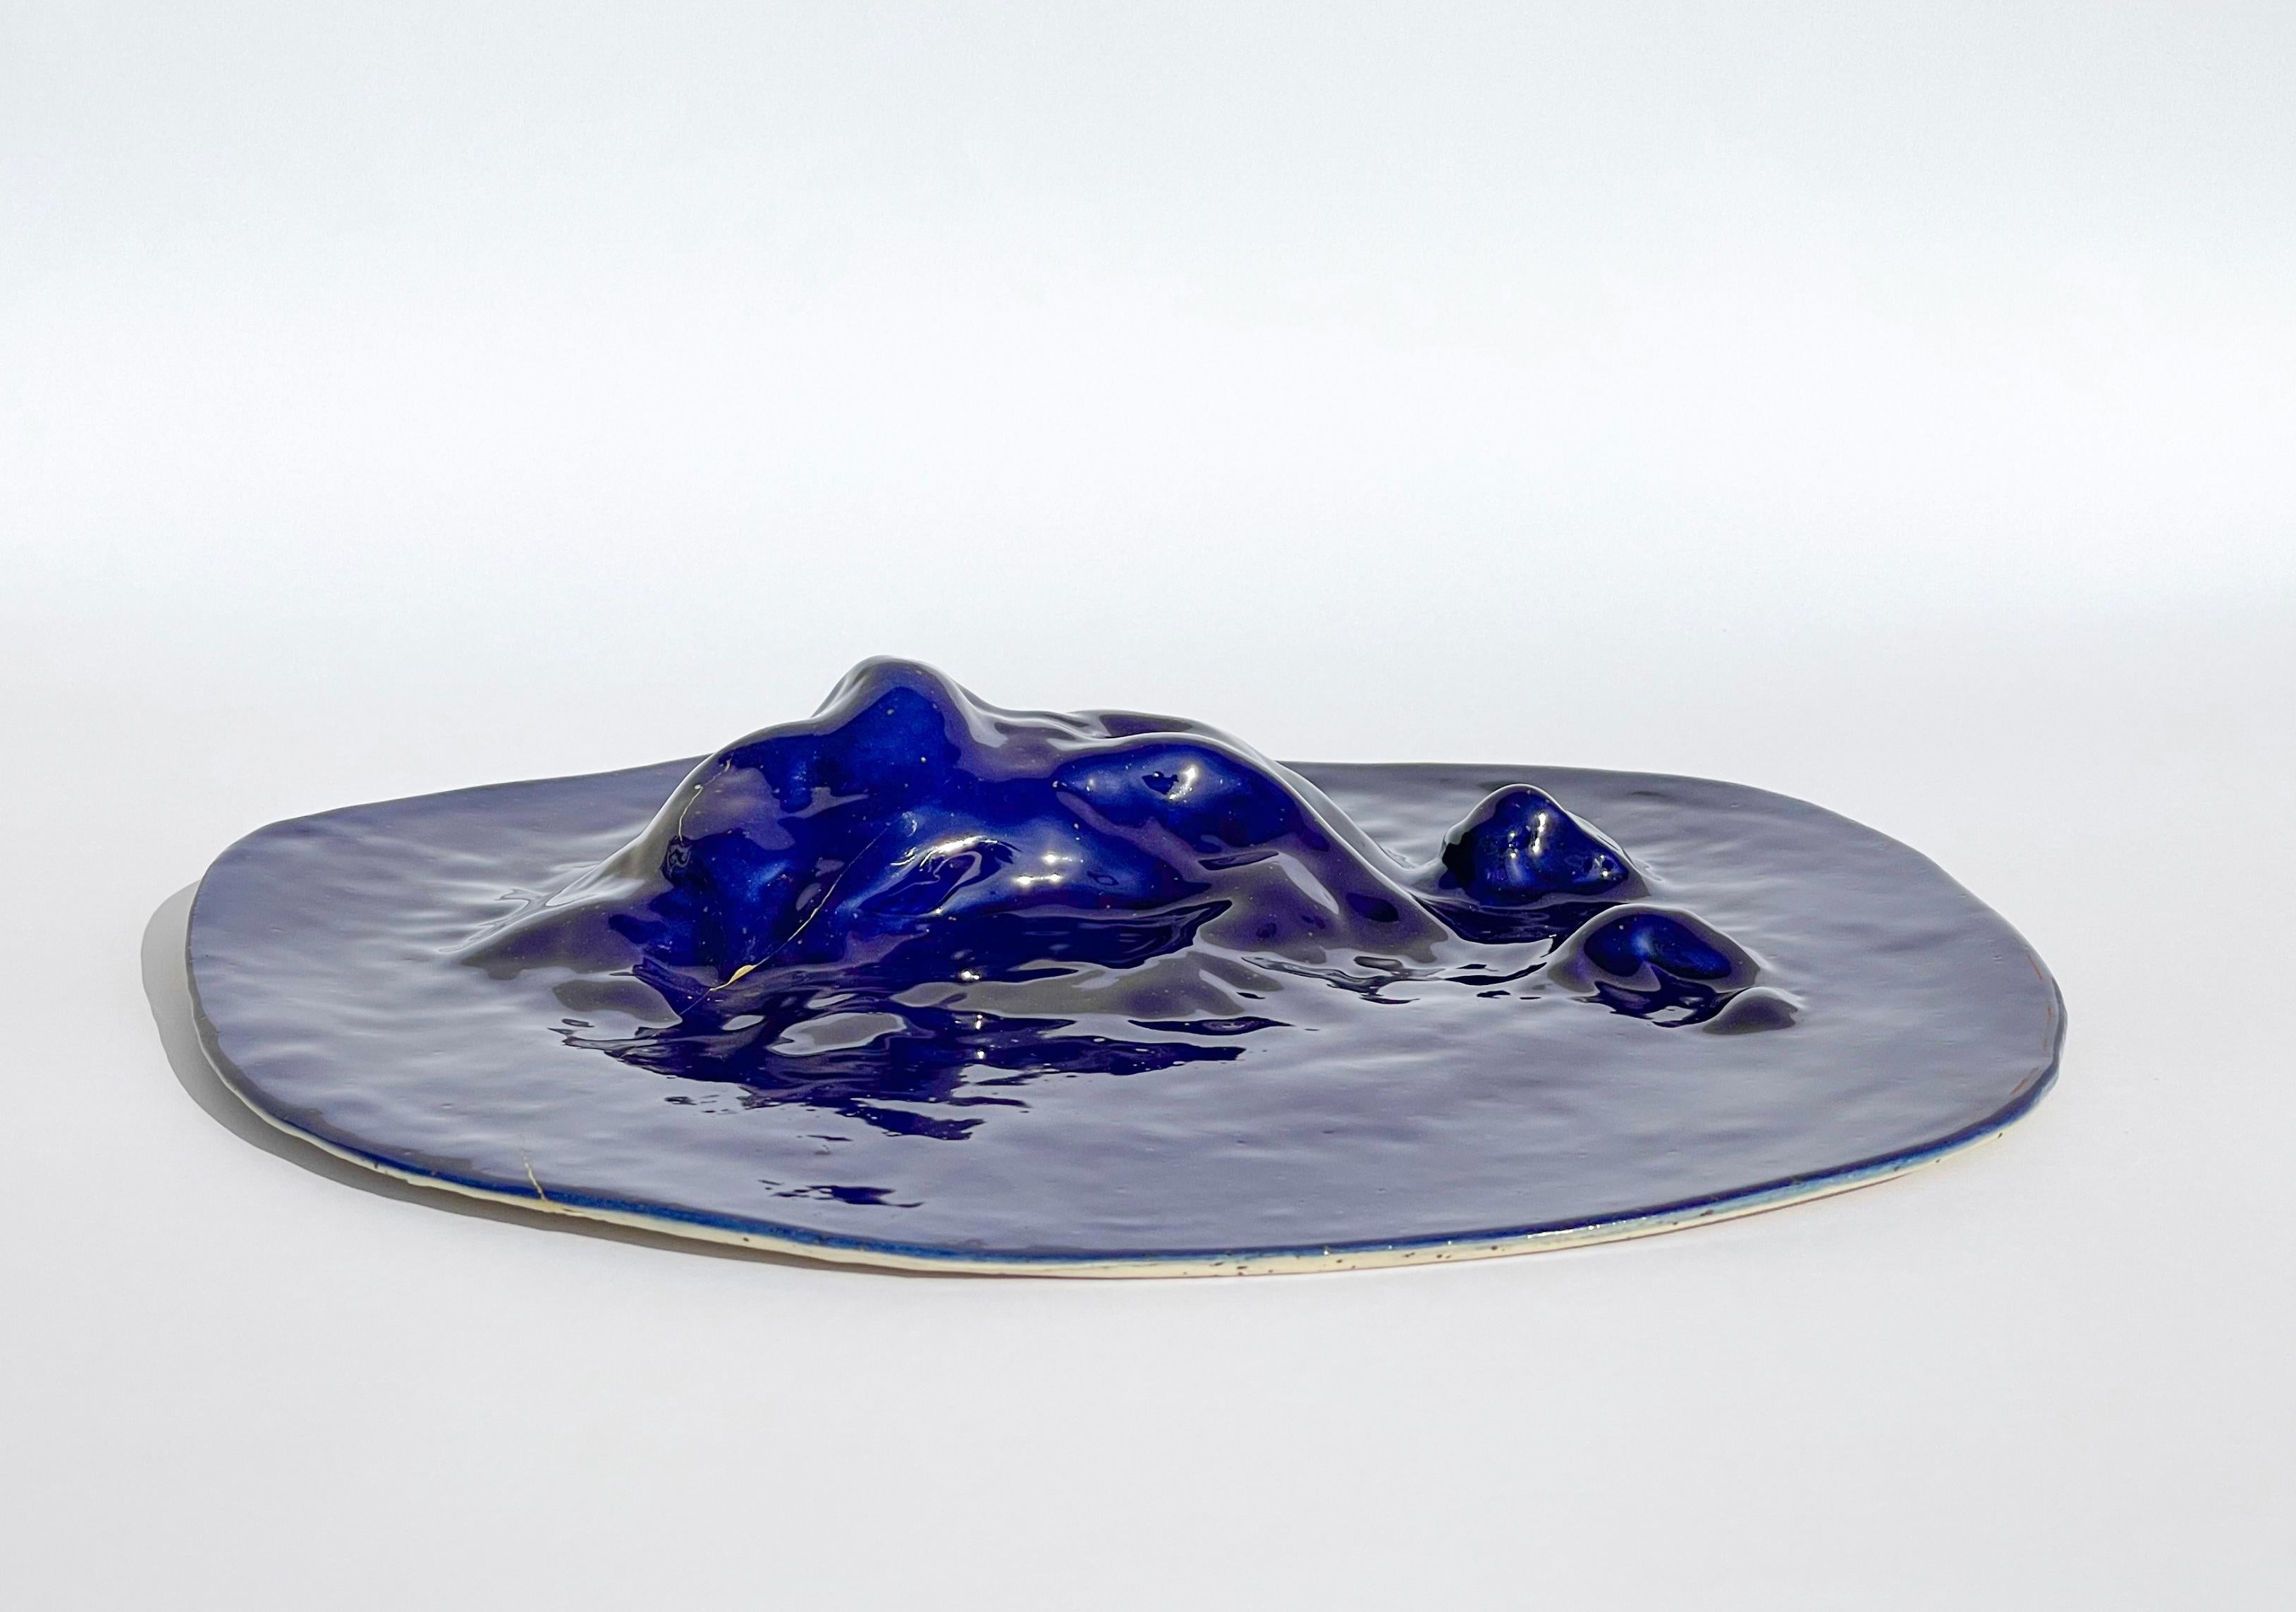 Glazed Unique Sculptural 'Gongshi' Plates N0.15 Objet D'art Cobalt Blue For Sale